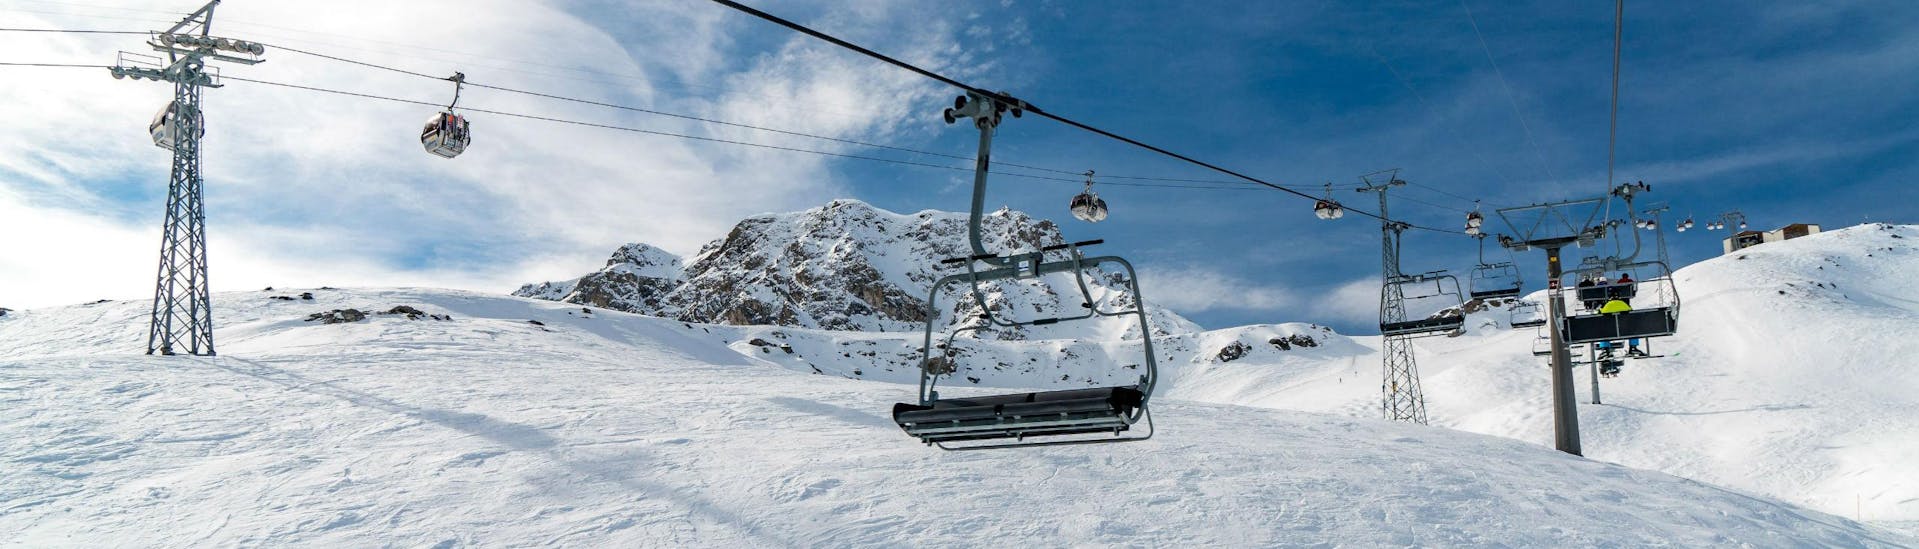 Ein Bild eines Sessellifts und einer Gondel im schweizerischen Skigebiet Arosa im Kanton Graubünden, wo örtliche Skischulen ihre Skikurse für Besucher, die das Skifahren lernen wollen, anbieten.